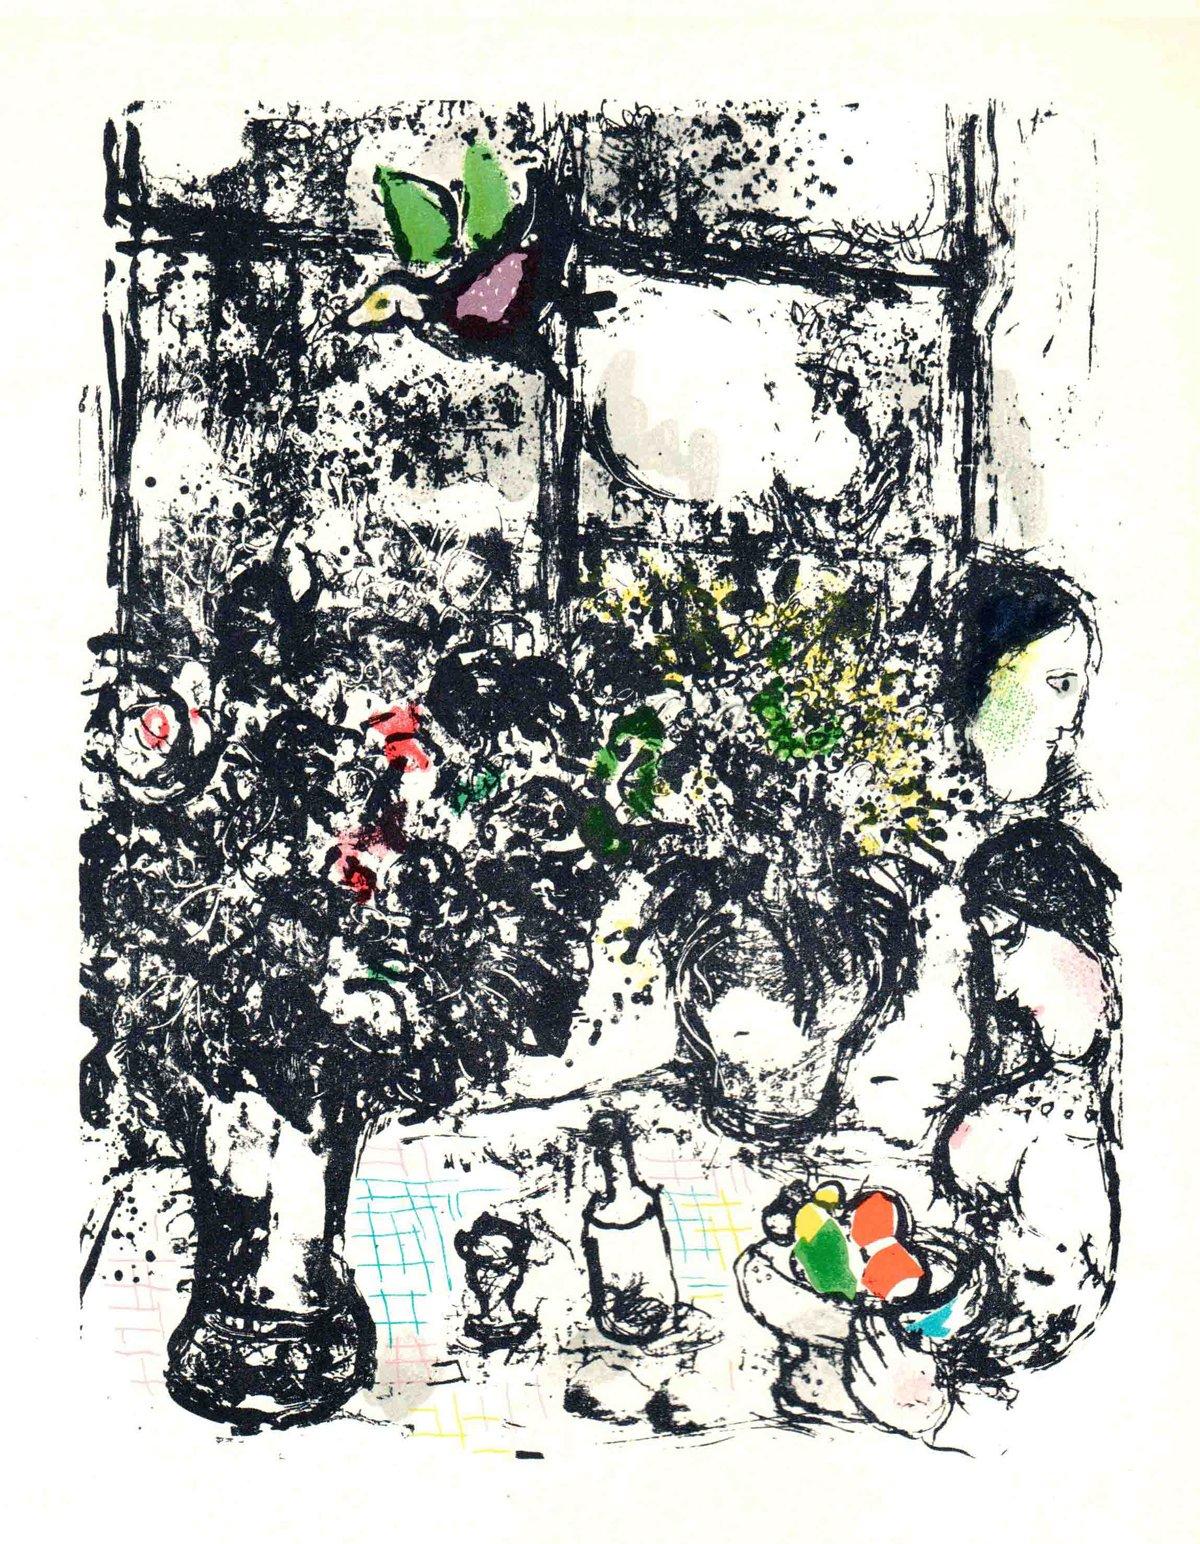 Papierformat: 12,5 x 9,75 Zoll (31,75 x 24,765 cm)
 Bildgröße: 9,75 x 7,5 Zoll (24,765 x 19,05 cm)
 Gerahmt: Nein
 Zustand: A-: Fast neuwertig, sehr leichte Gebrauchsspuren
 
 Zusätzliche Details: Buchseite 113 in Chagall Lithographe II (1957-1962),